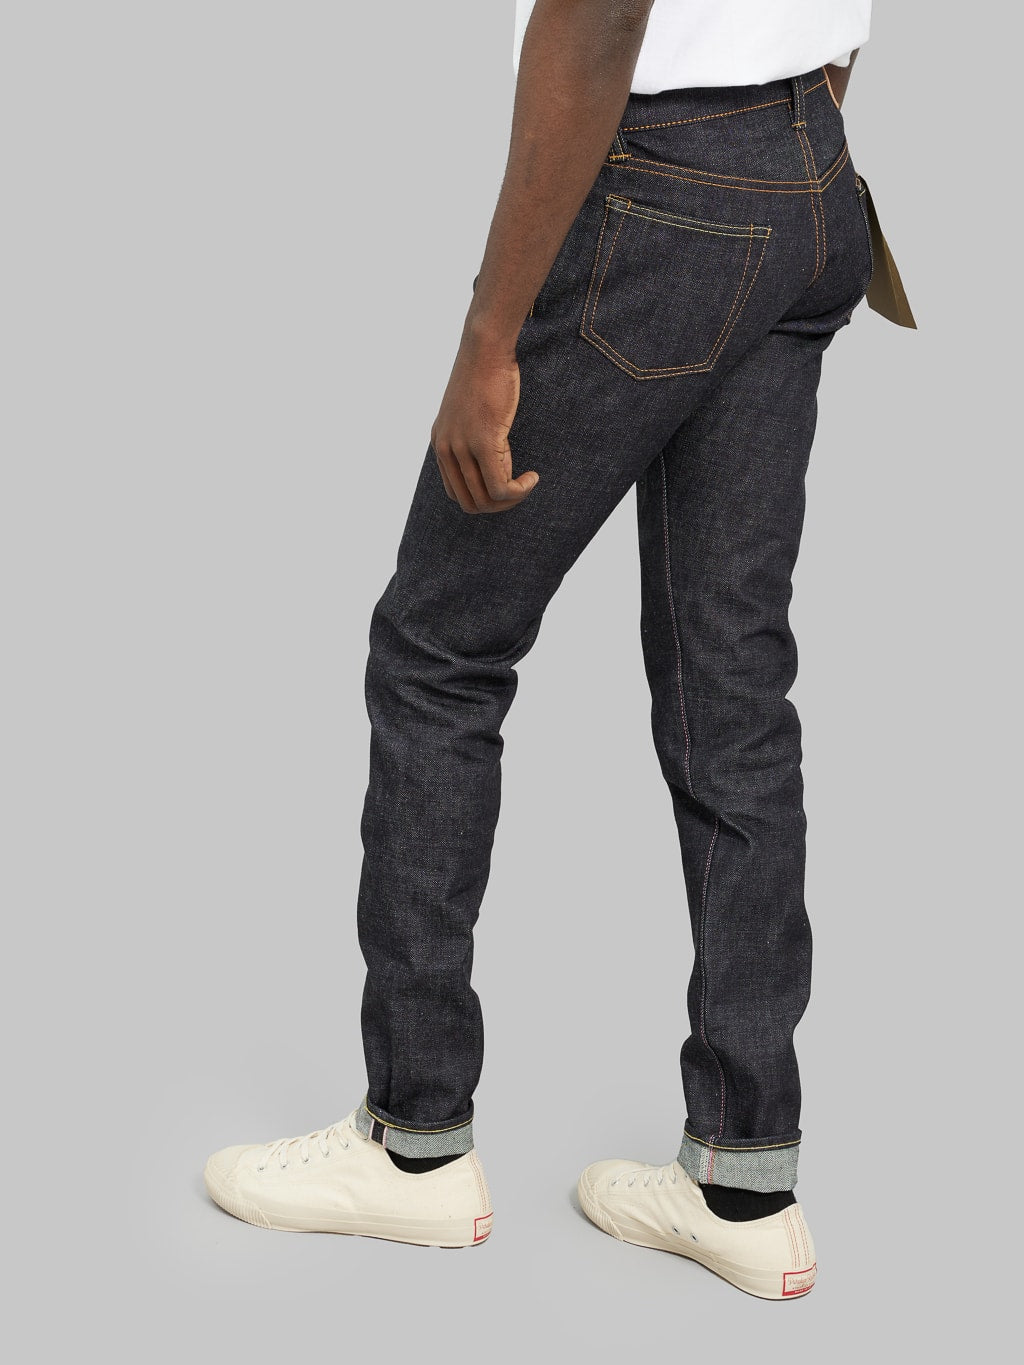 momotaro jeans 0405 v selvedge denim high tapered regular rise